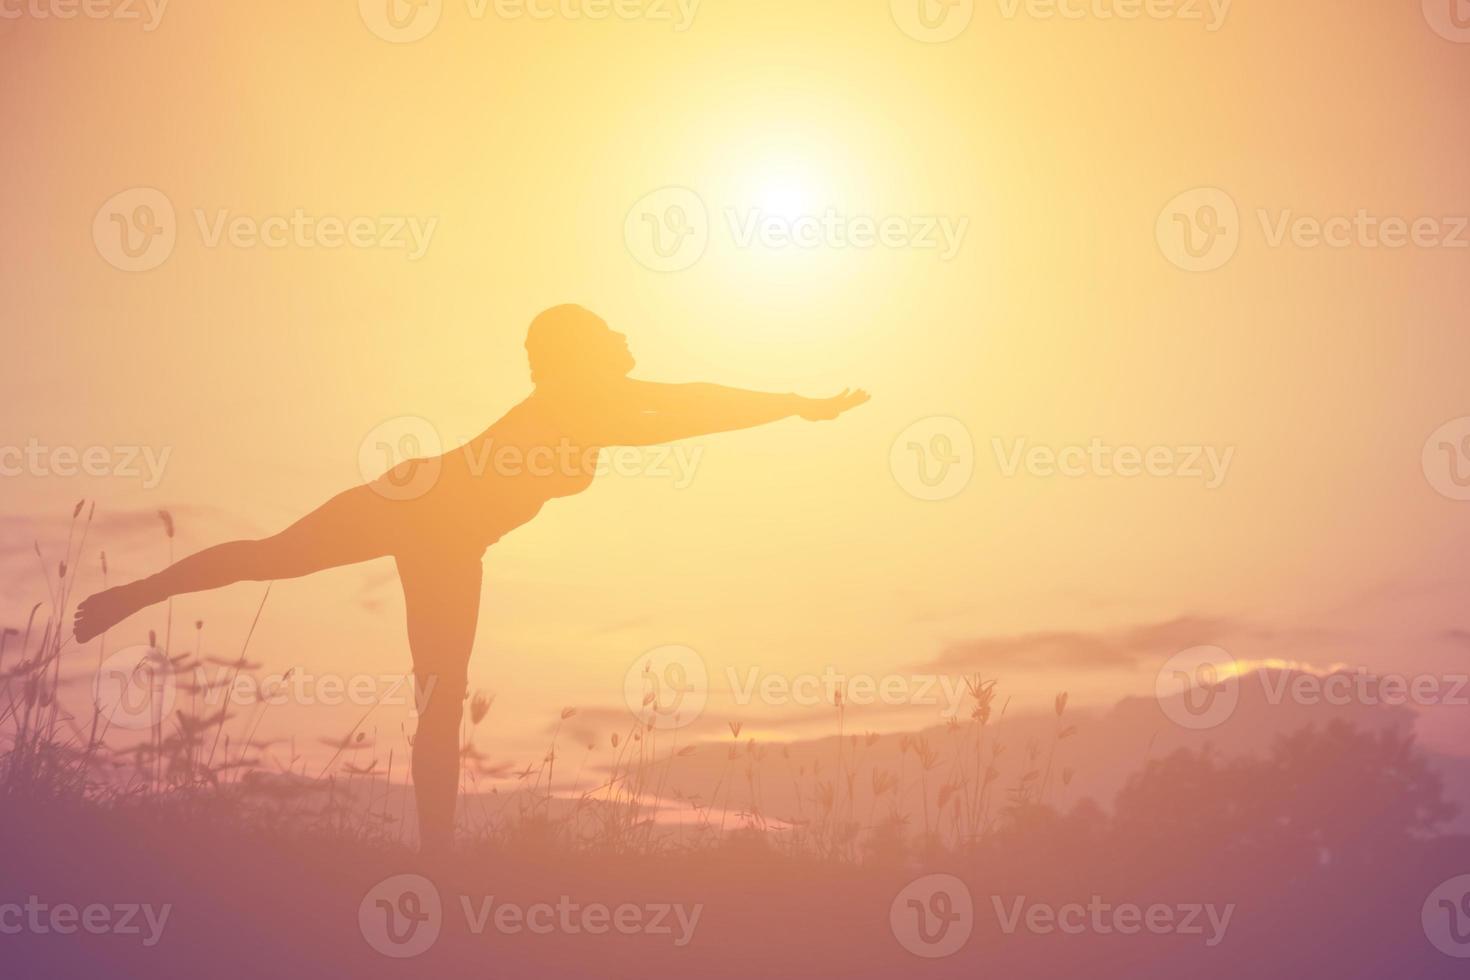 silhouet van een vrouw die bidt over een prachtige hemelachtergrond foto